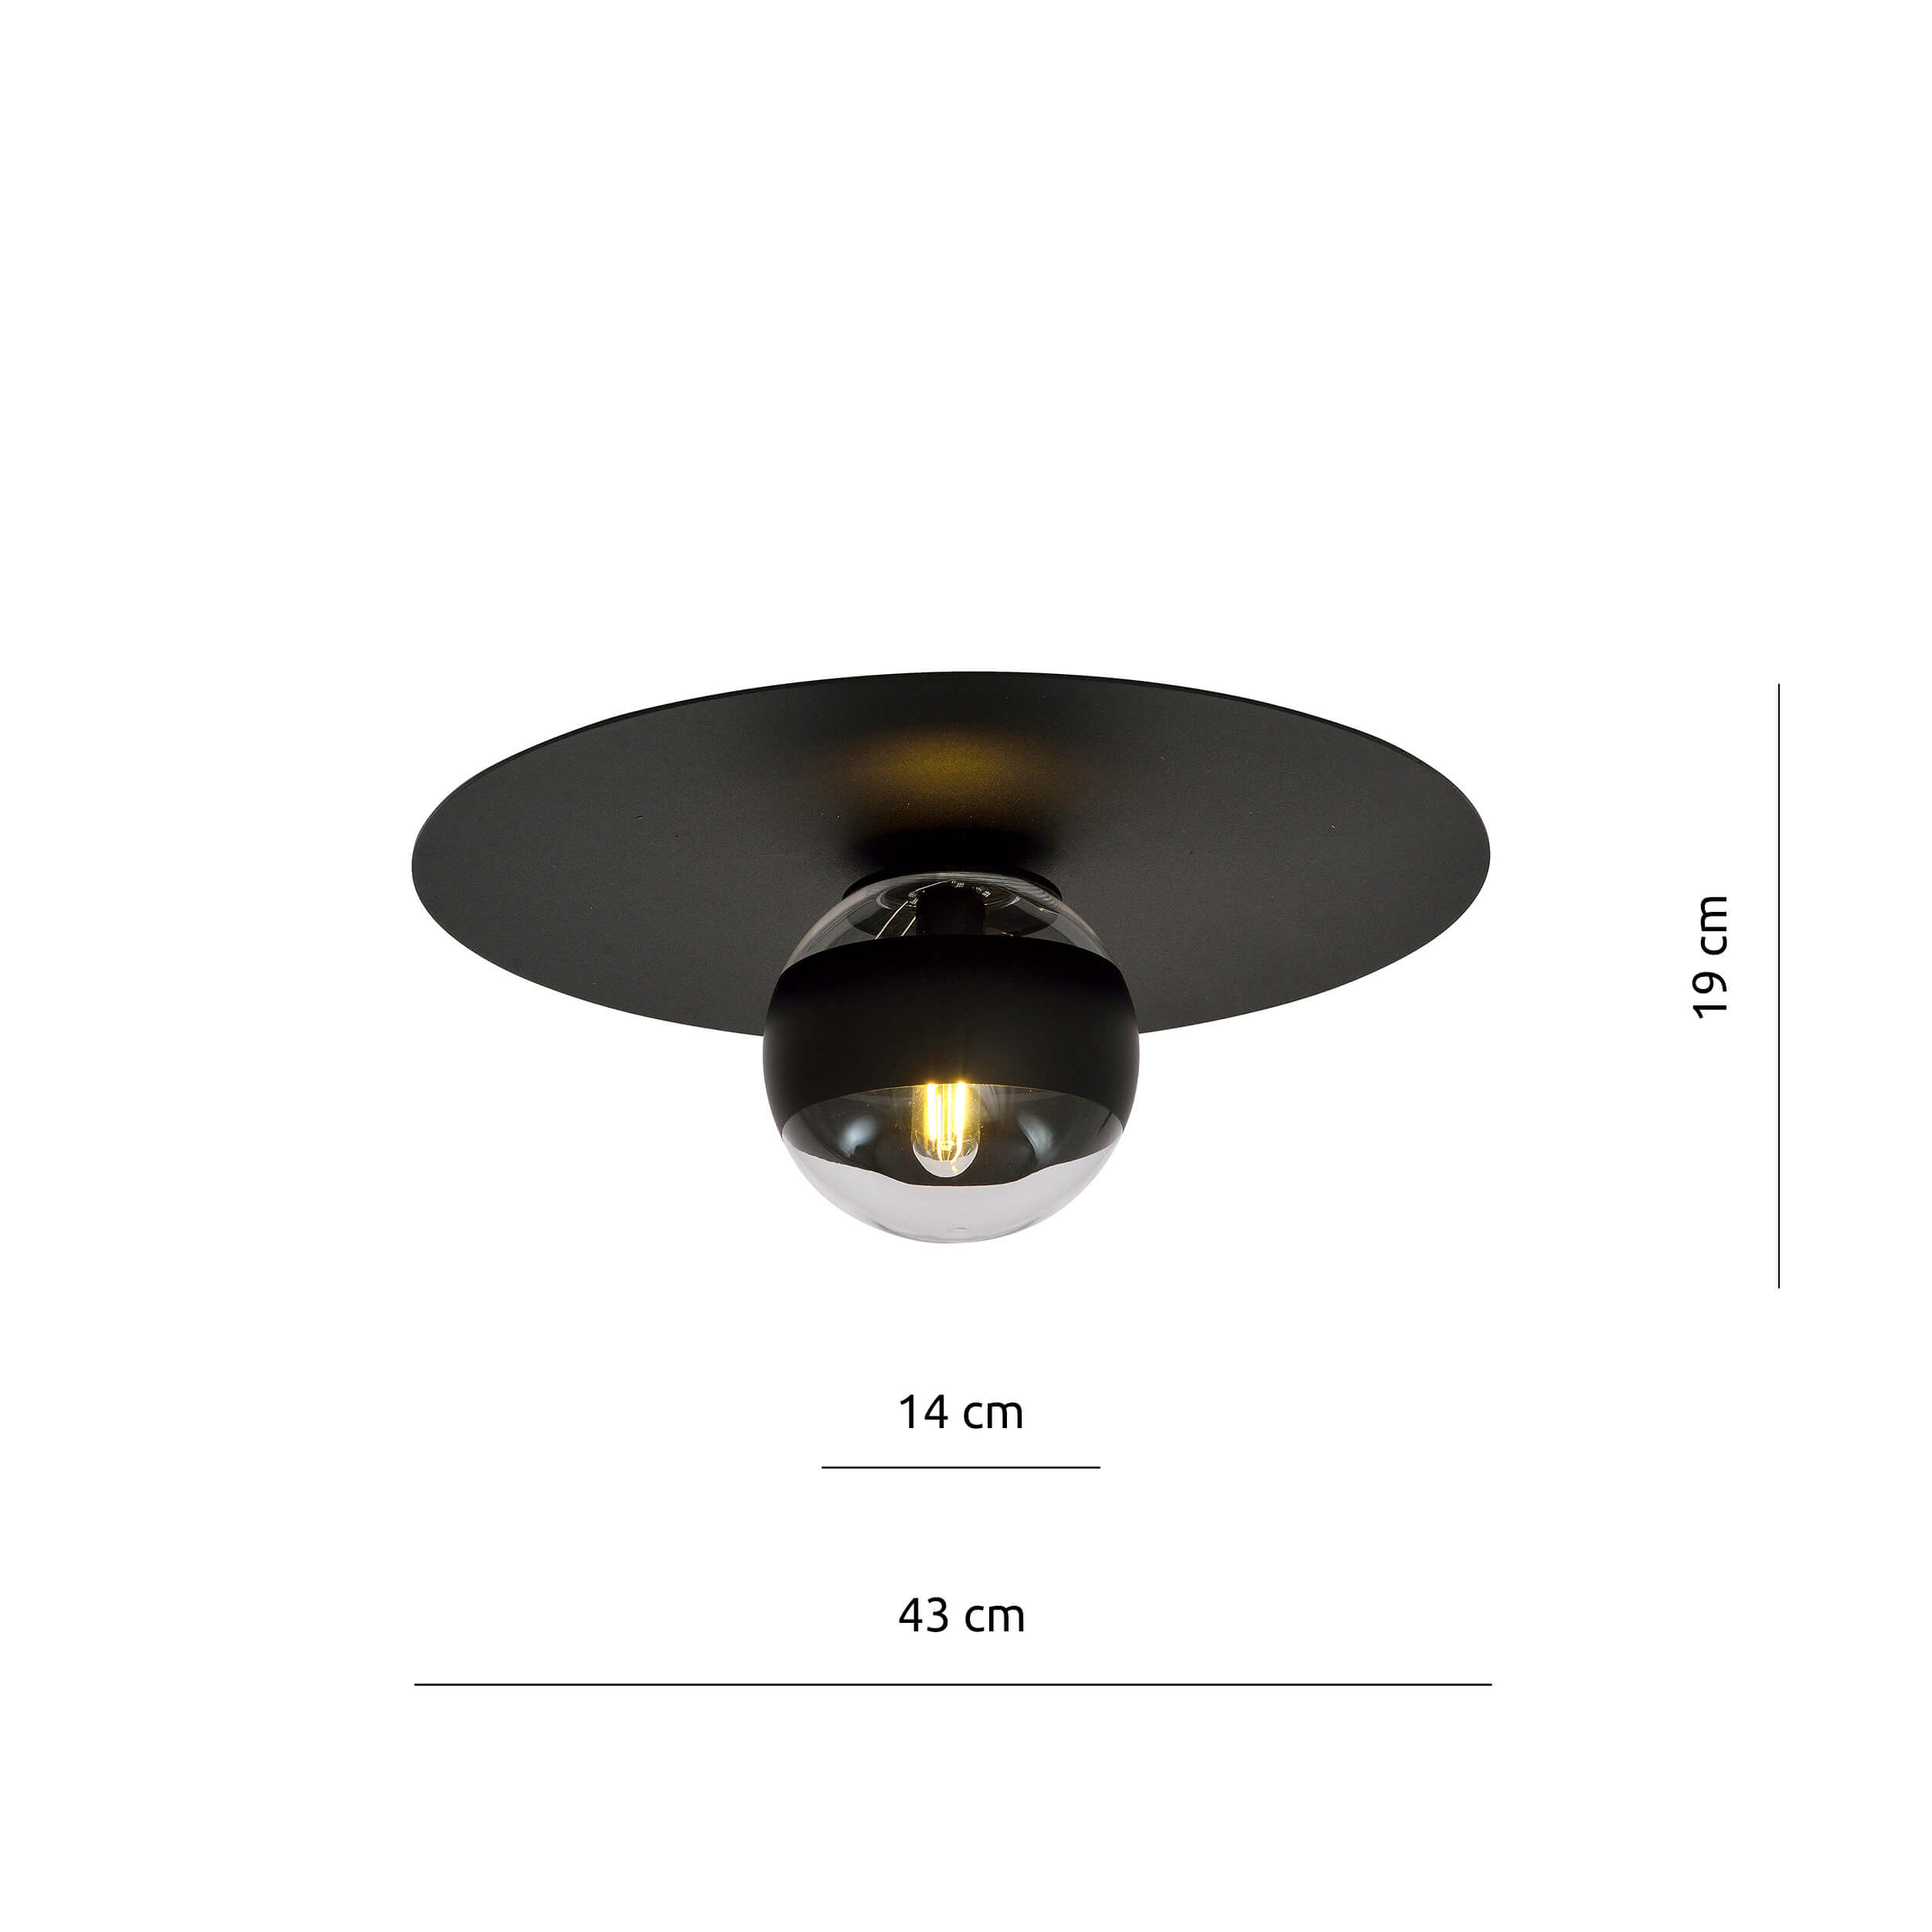 Czarna lampa sufitowa Manx w nowoczesnym stylu